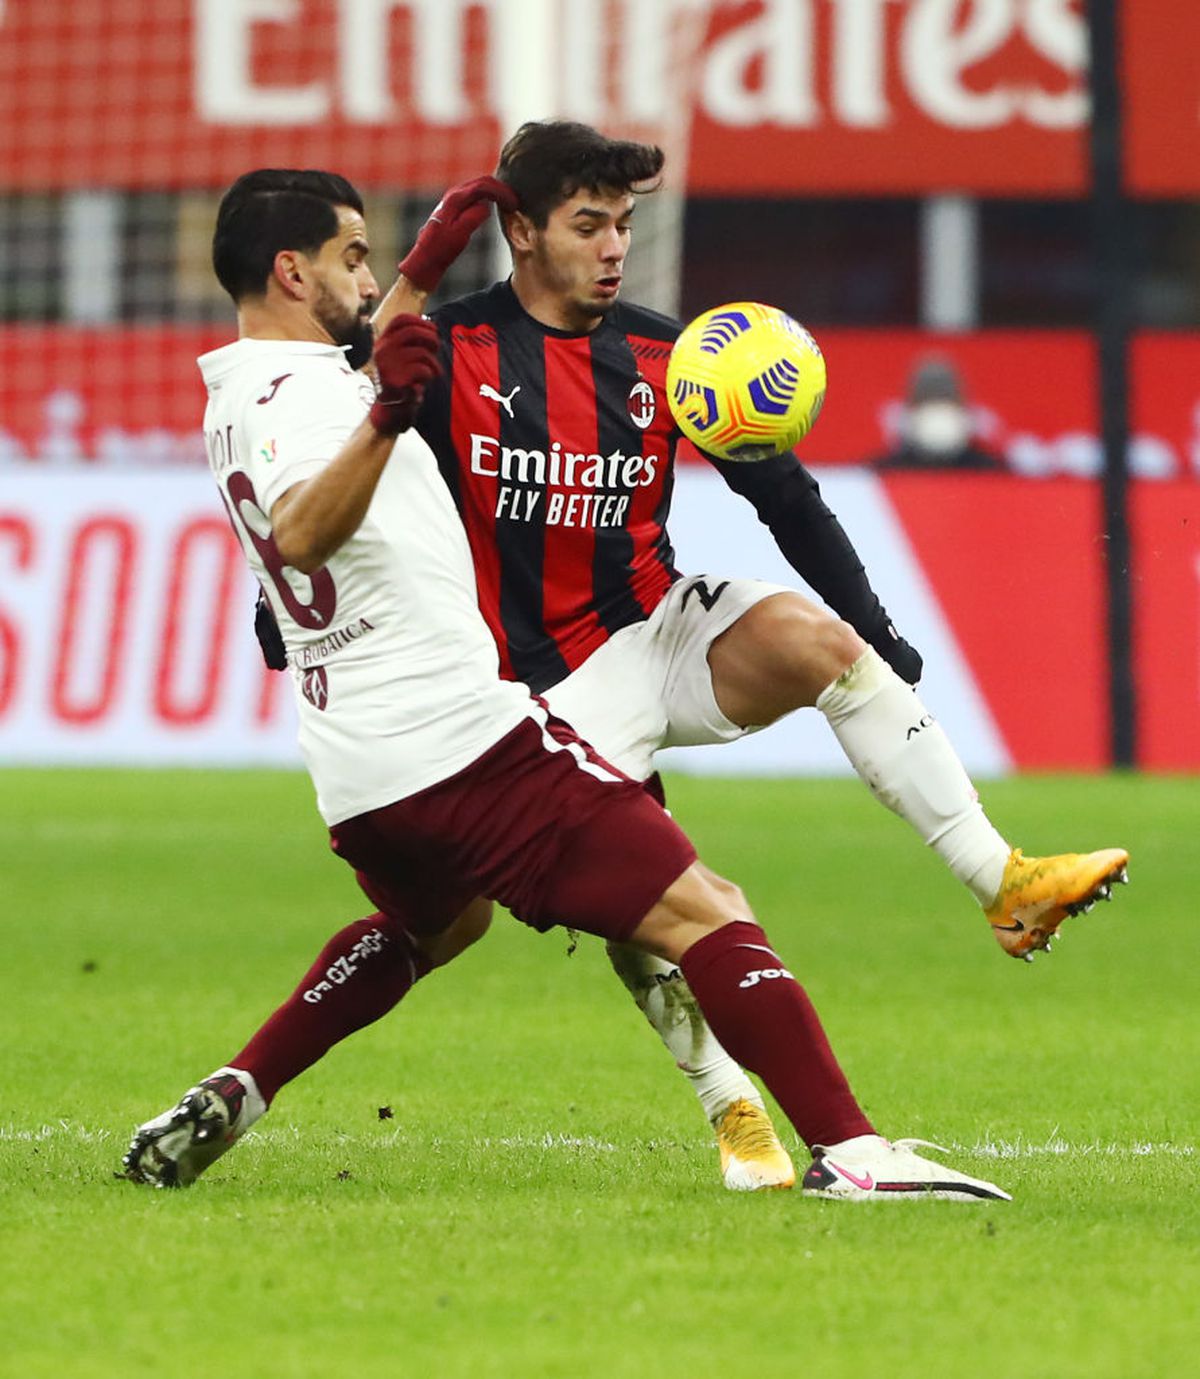 Tătărușanu, elogiat în Gazzetta dello Sport după ce dus-o pe Milan în sferturile Cupei: „A devenit protagonist absolut”